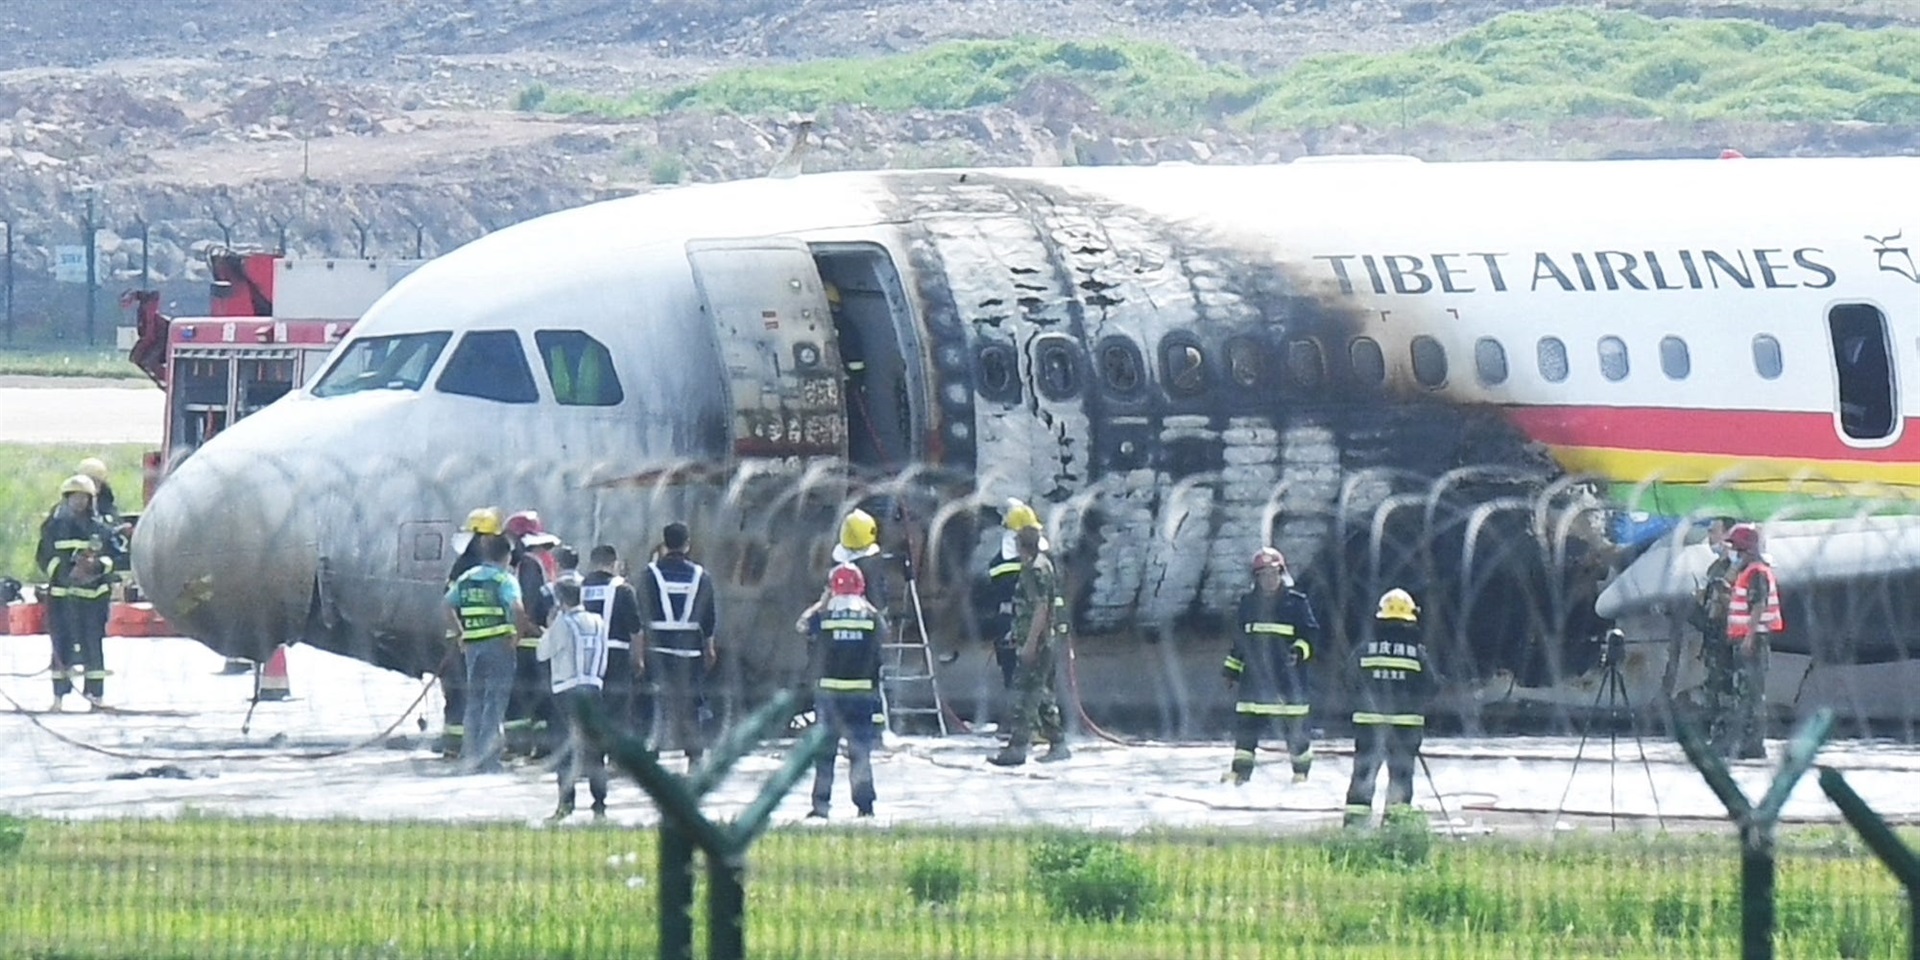 LIHAT |  Penumpang lari menyelamatkan diri setelah pesawat tergelincir di landasan pacu, terbakar sebelum lepas landas